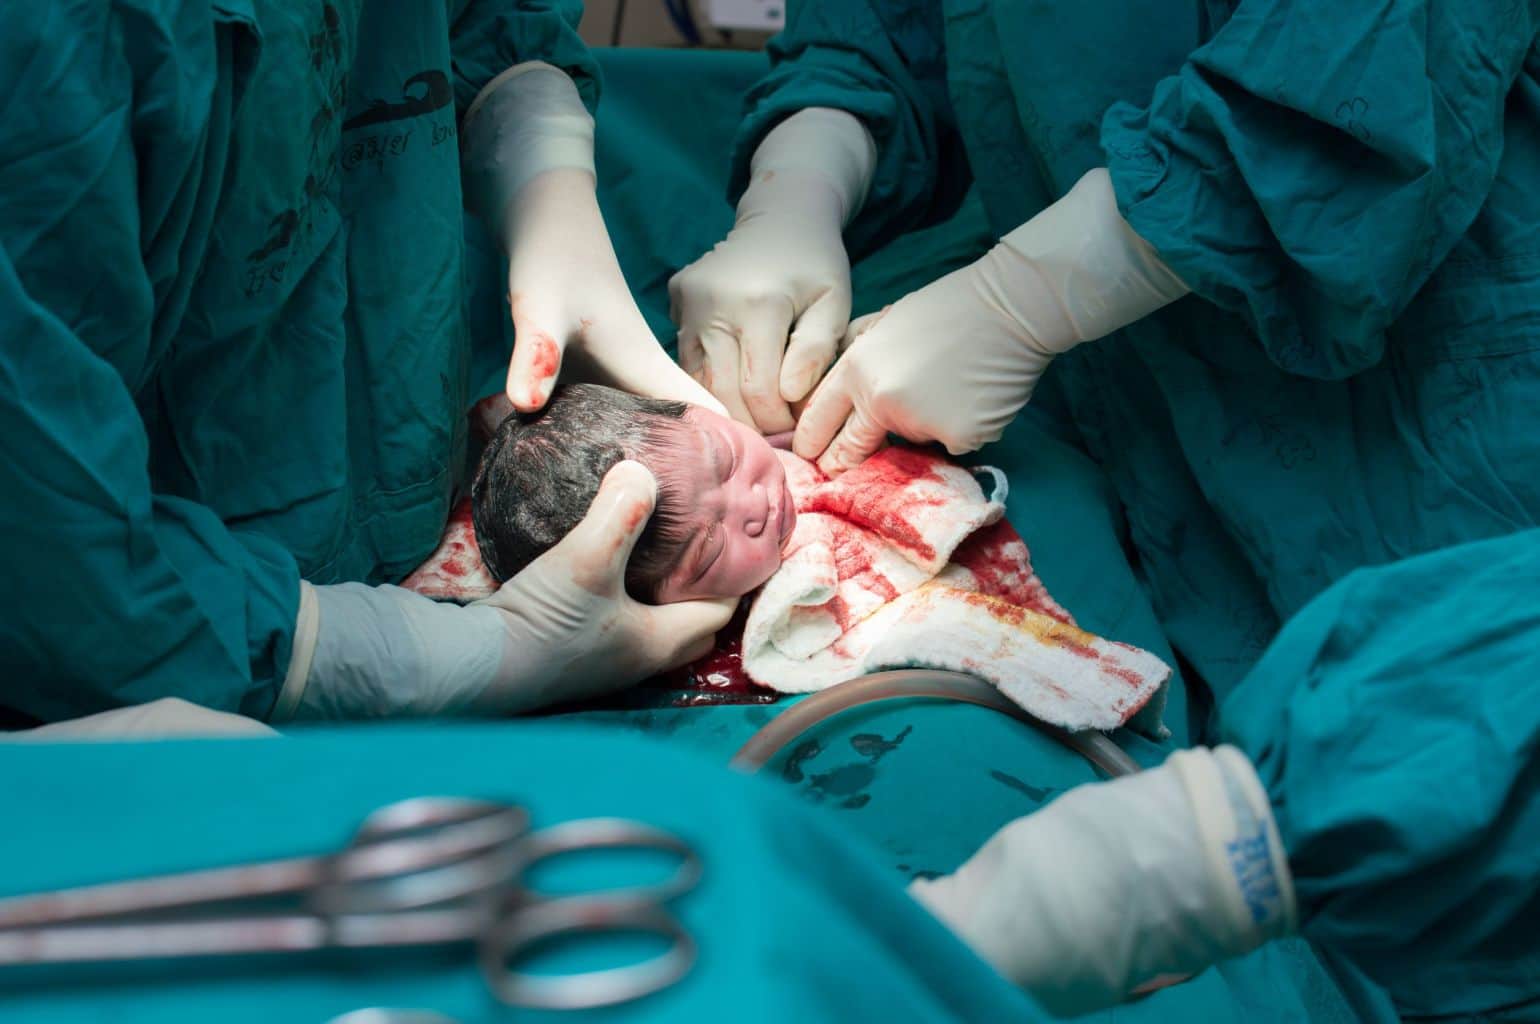 הוצאת התינוק בניתוח קיסרי